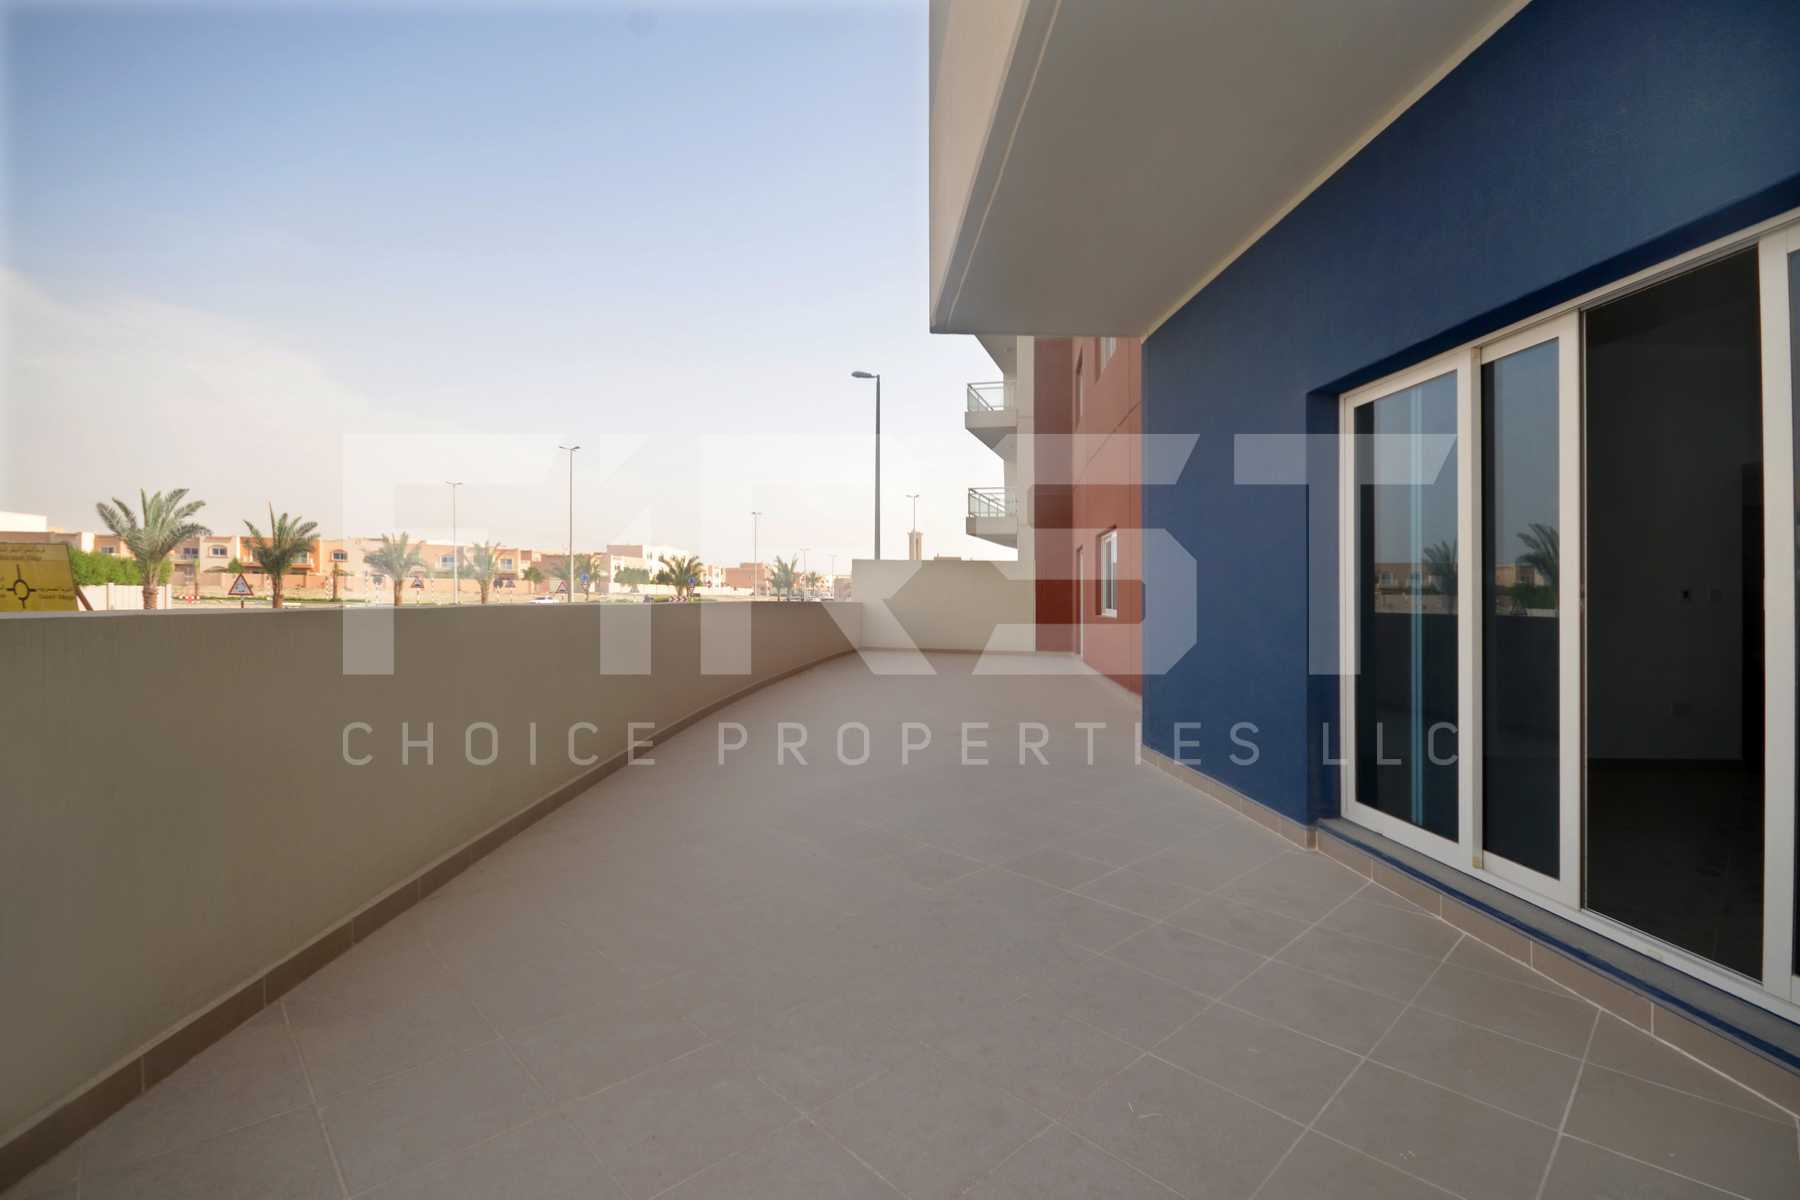 Internal Photo of 3 Bedroom Apartment Type G Ground Floor in Al Reef Downtown Al Reef Abu Dhabi UAE 220 sq.m 2368sq.ft (3).jpg